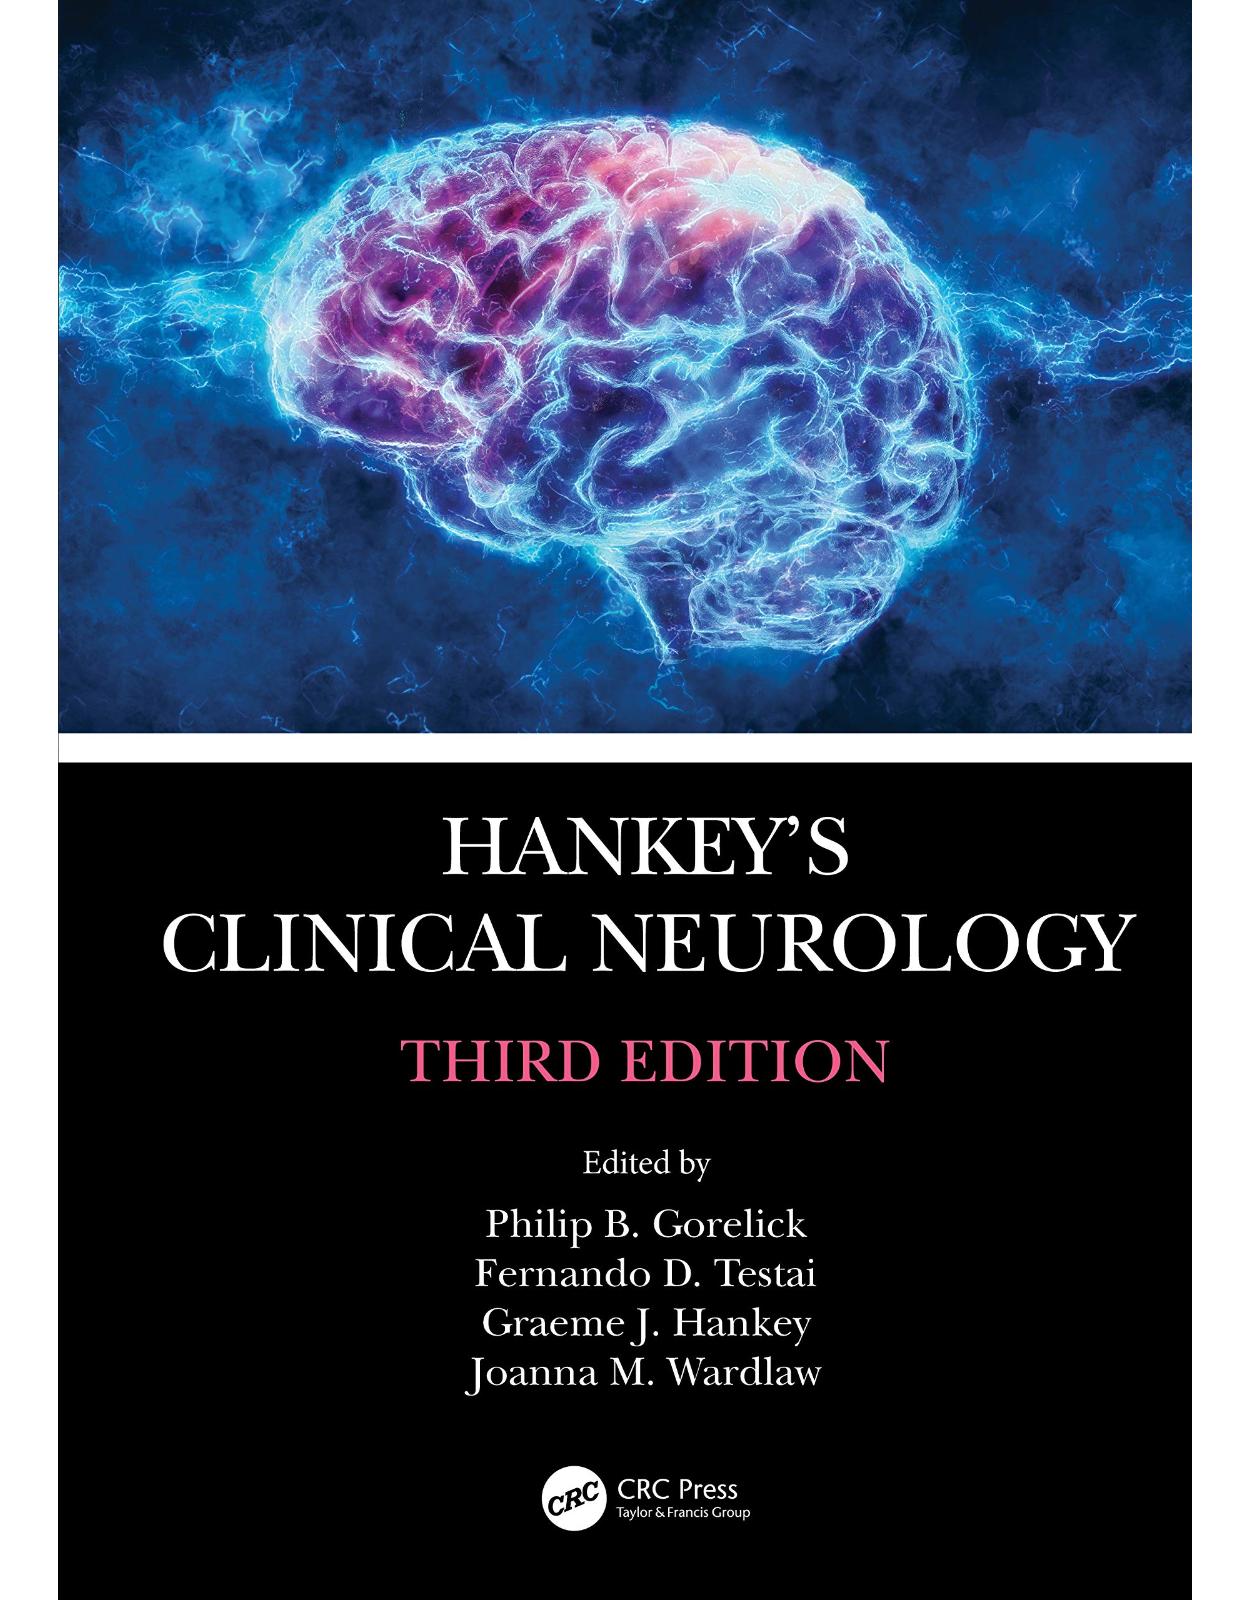 Hankey’s Clinical Neurology